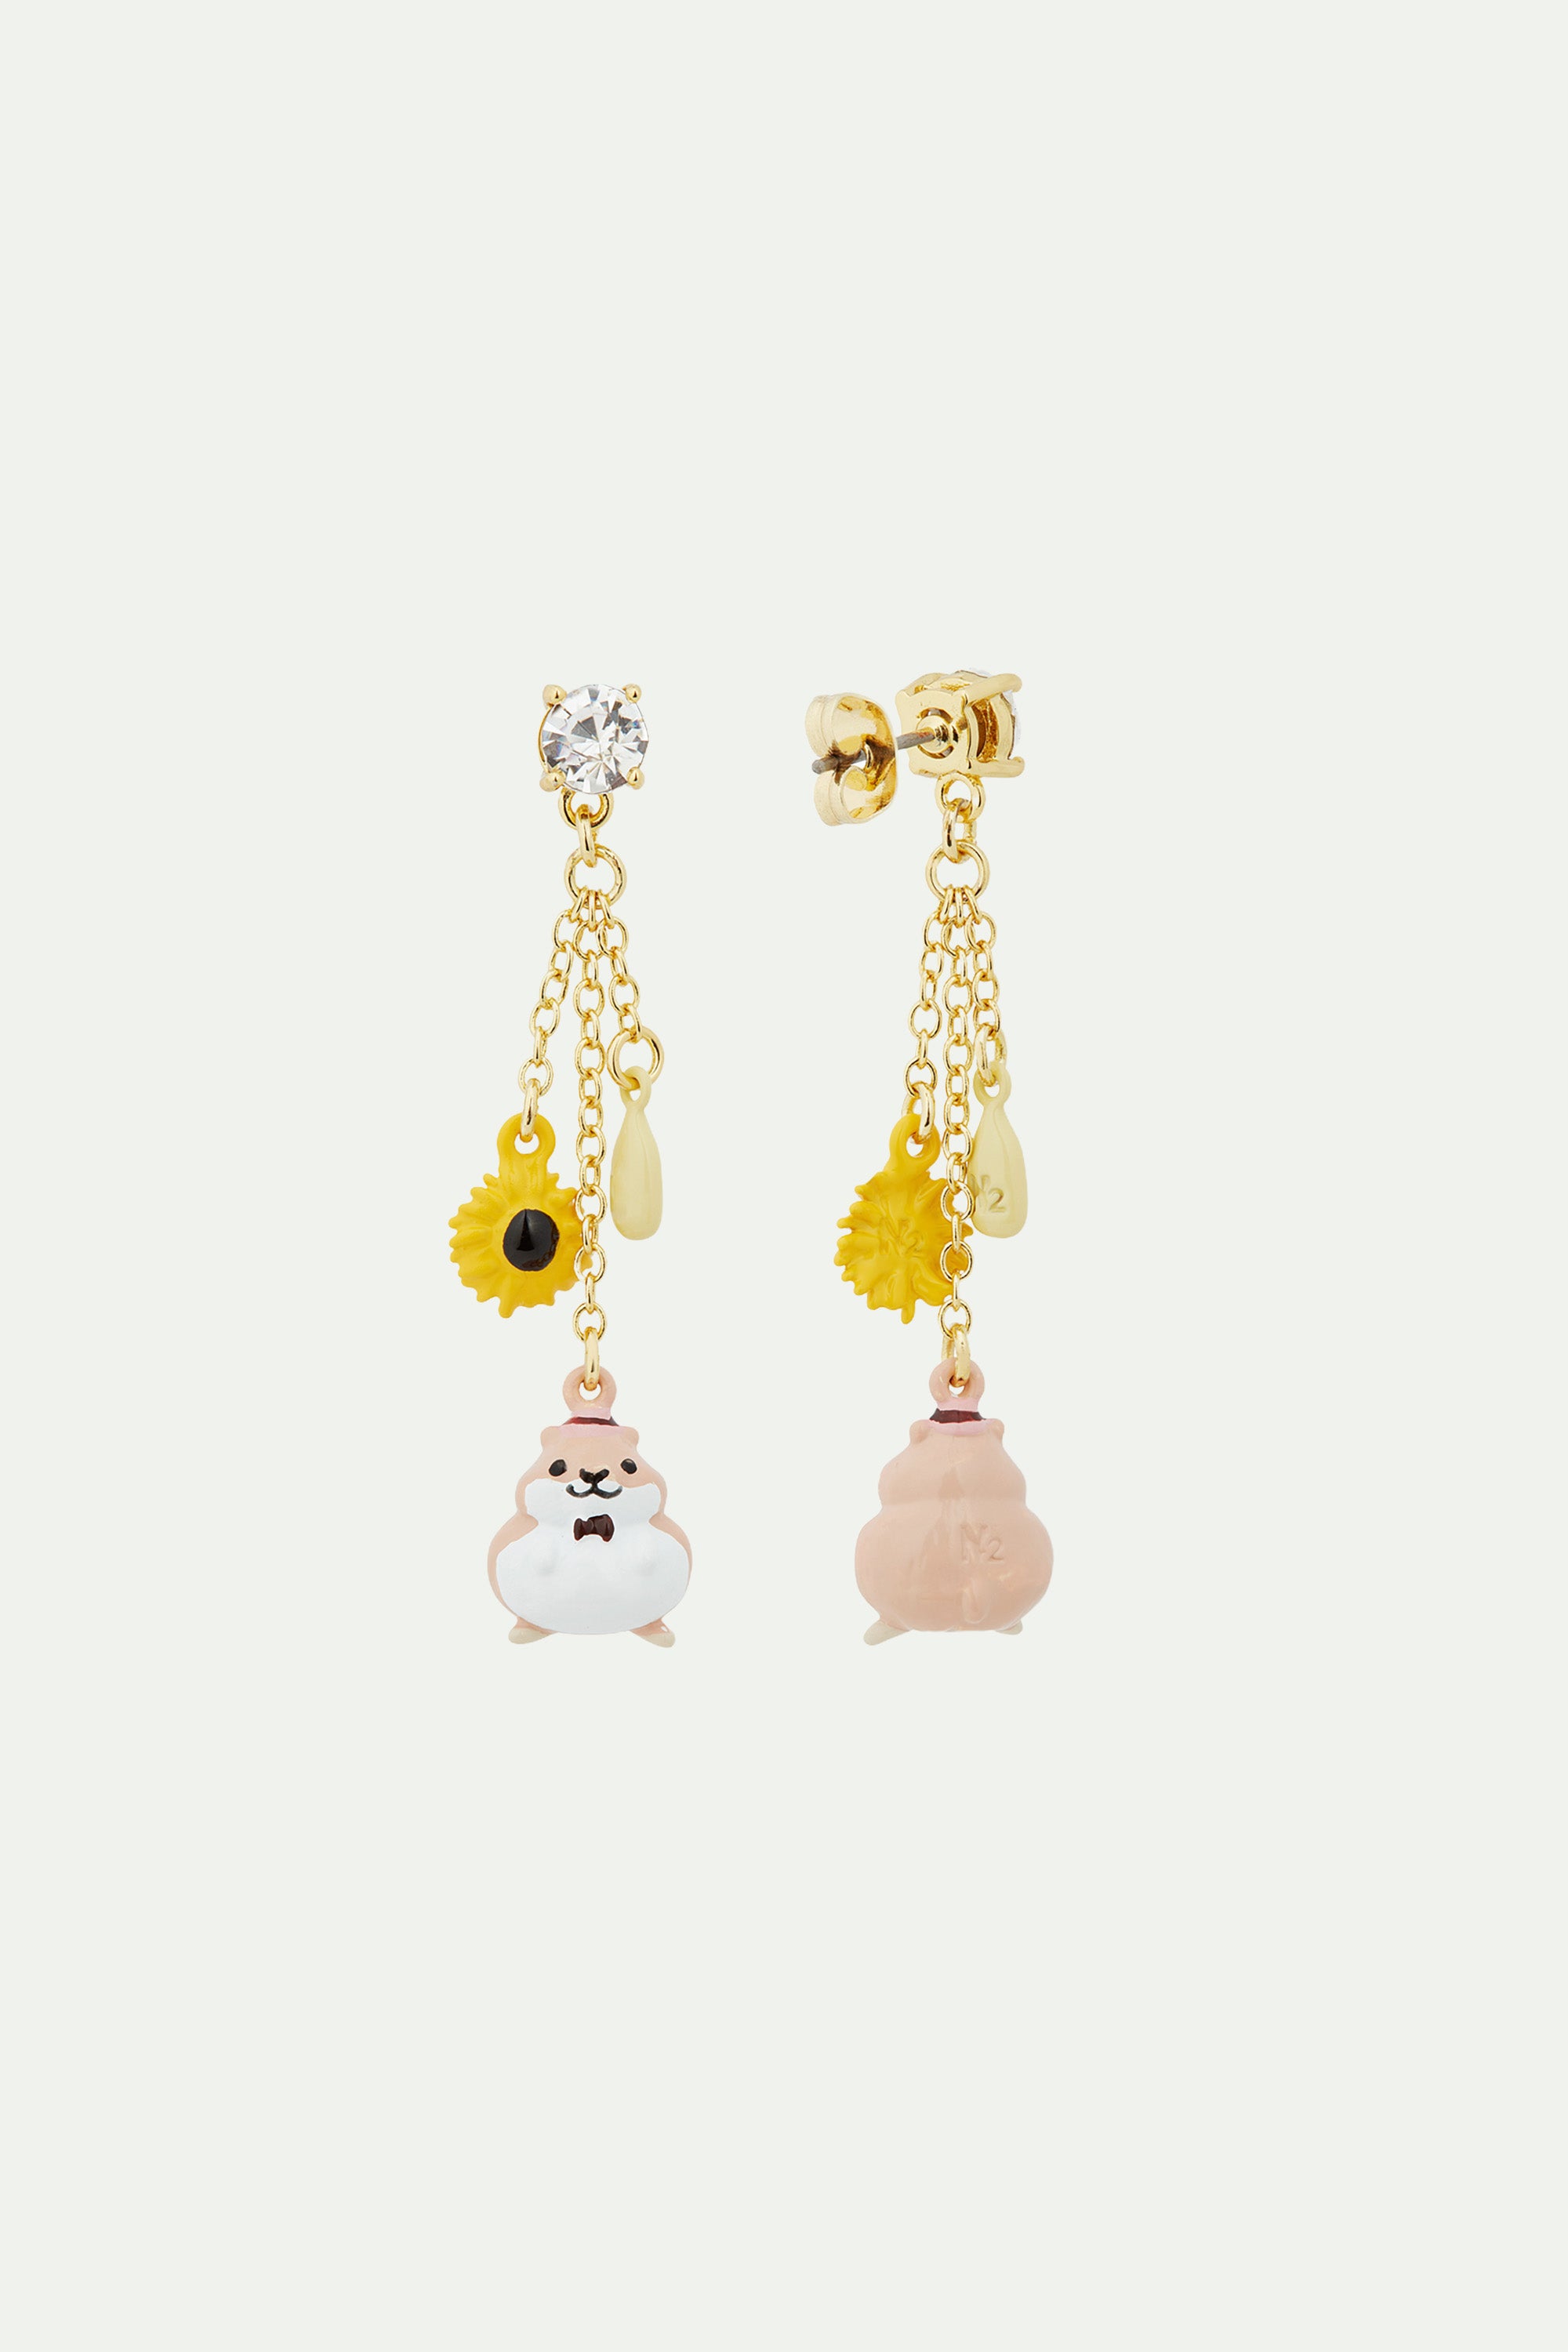 Hamster and sunflower dangle post earrings